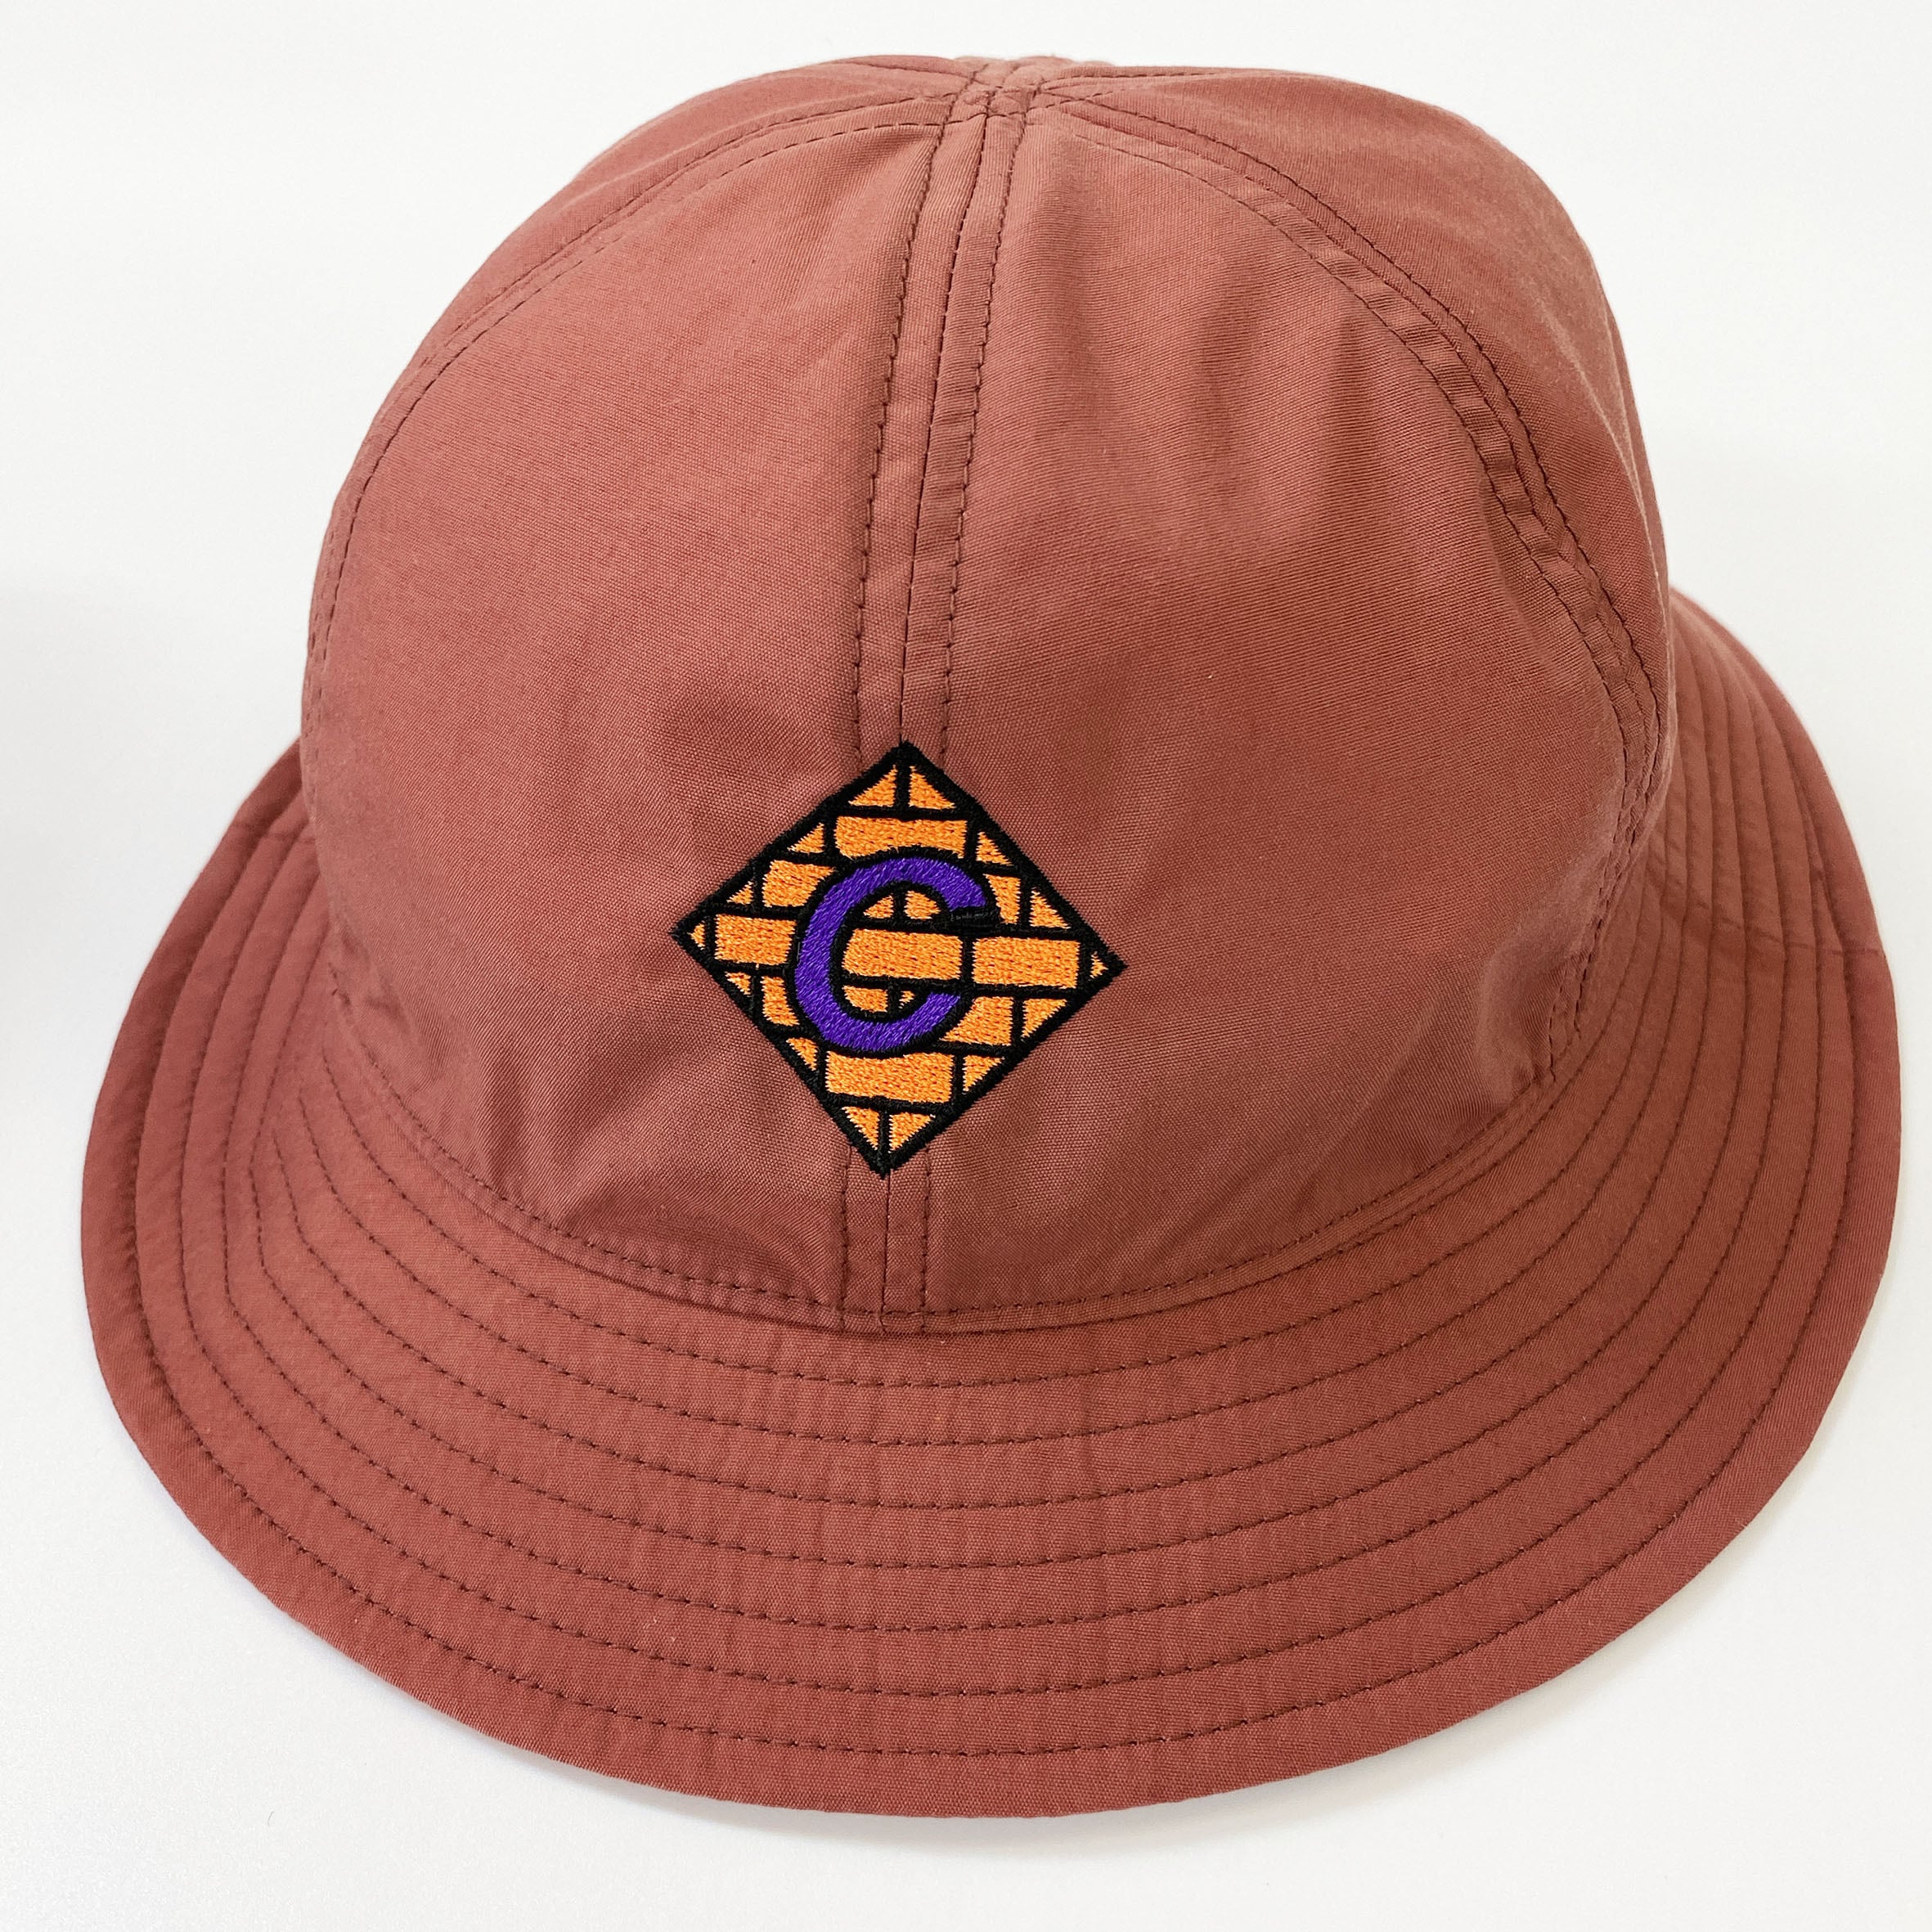 【在庫限りSALE】 Colt Paterson コルトパターソン Nylon Metro Hat (品番CP004)